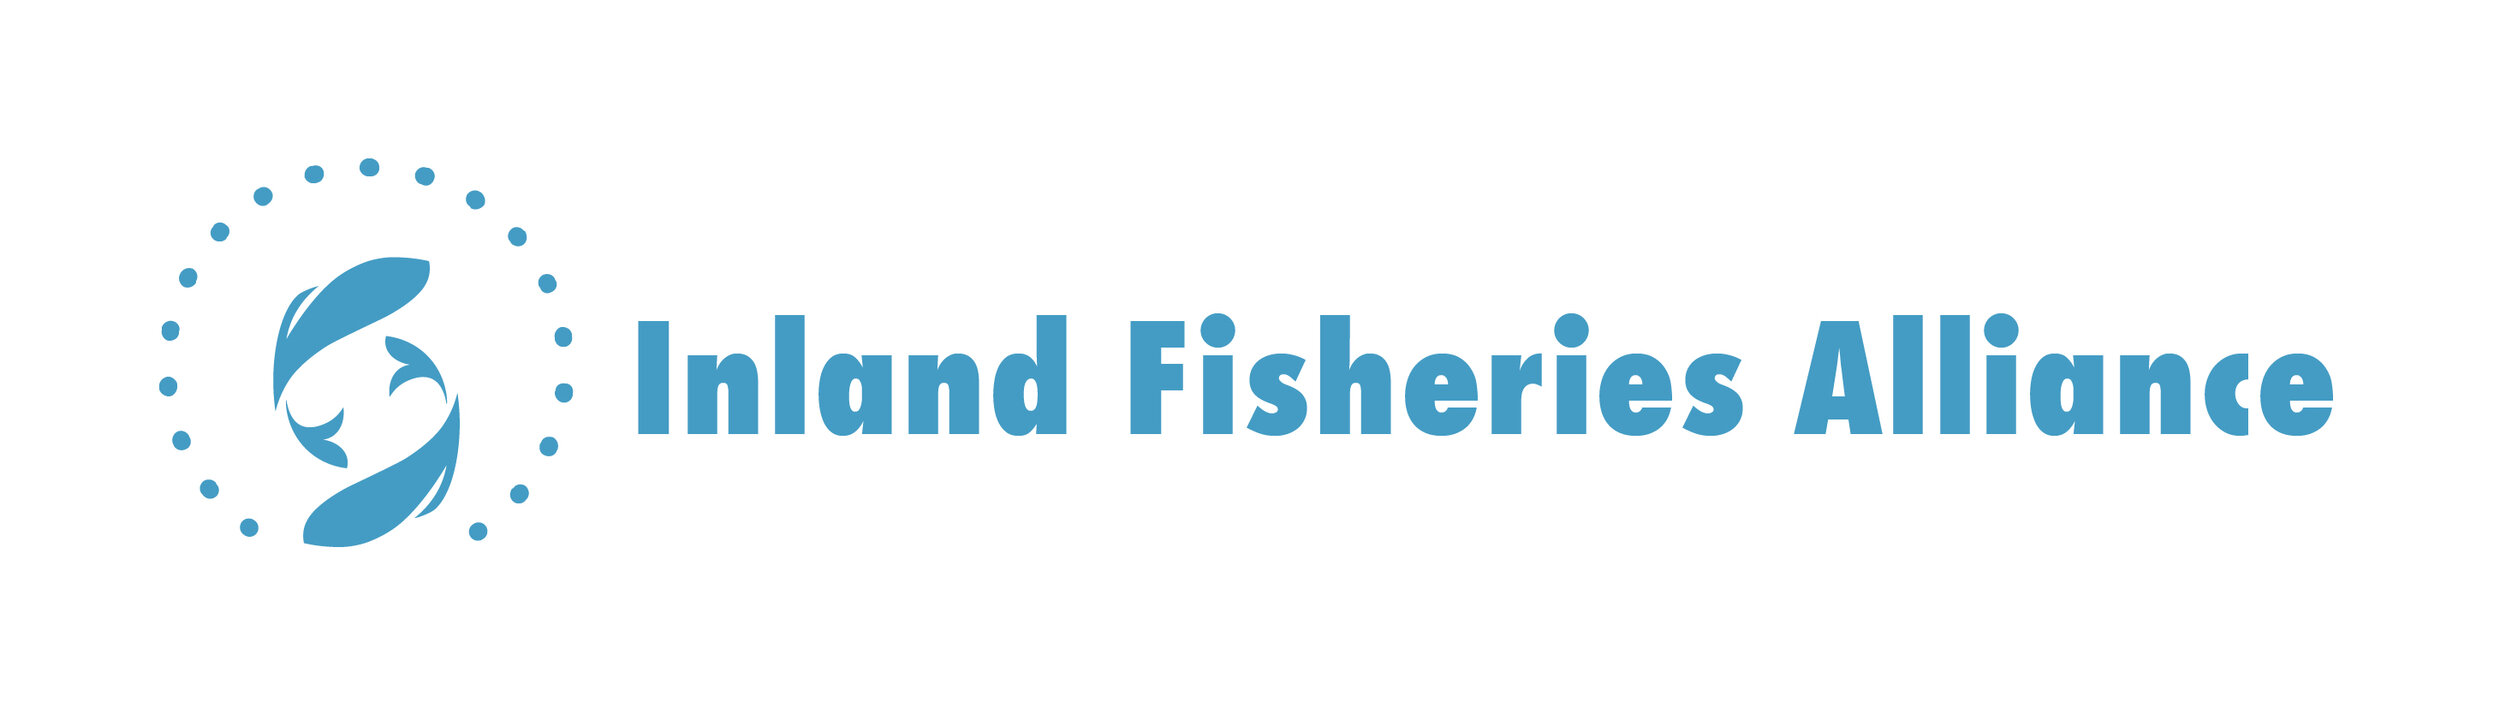 Inland Fisheries Alliance website